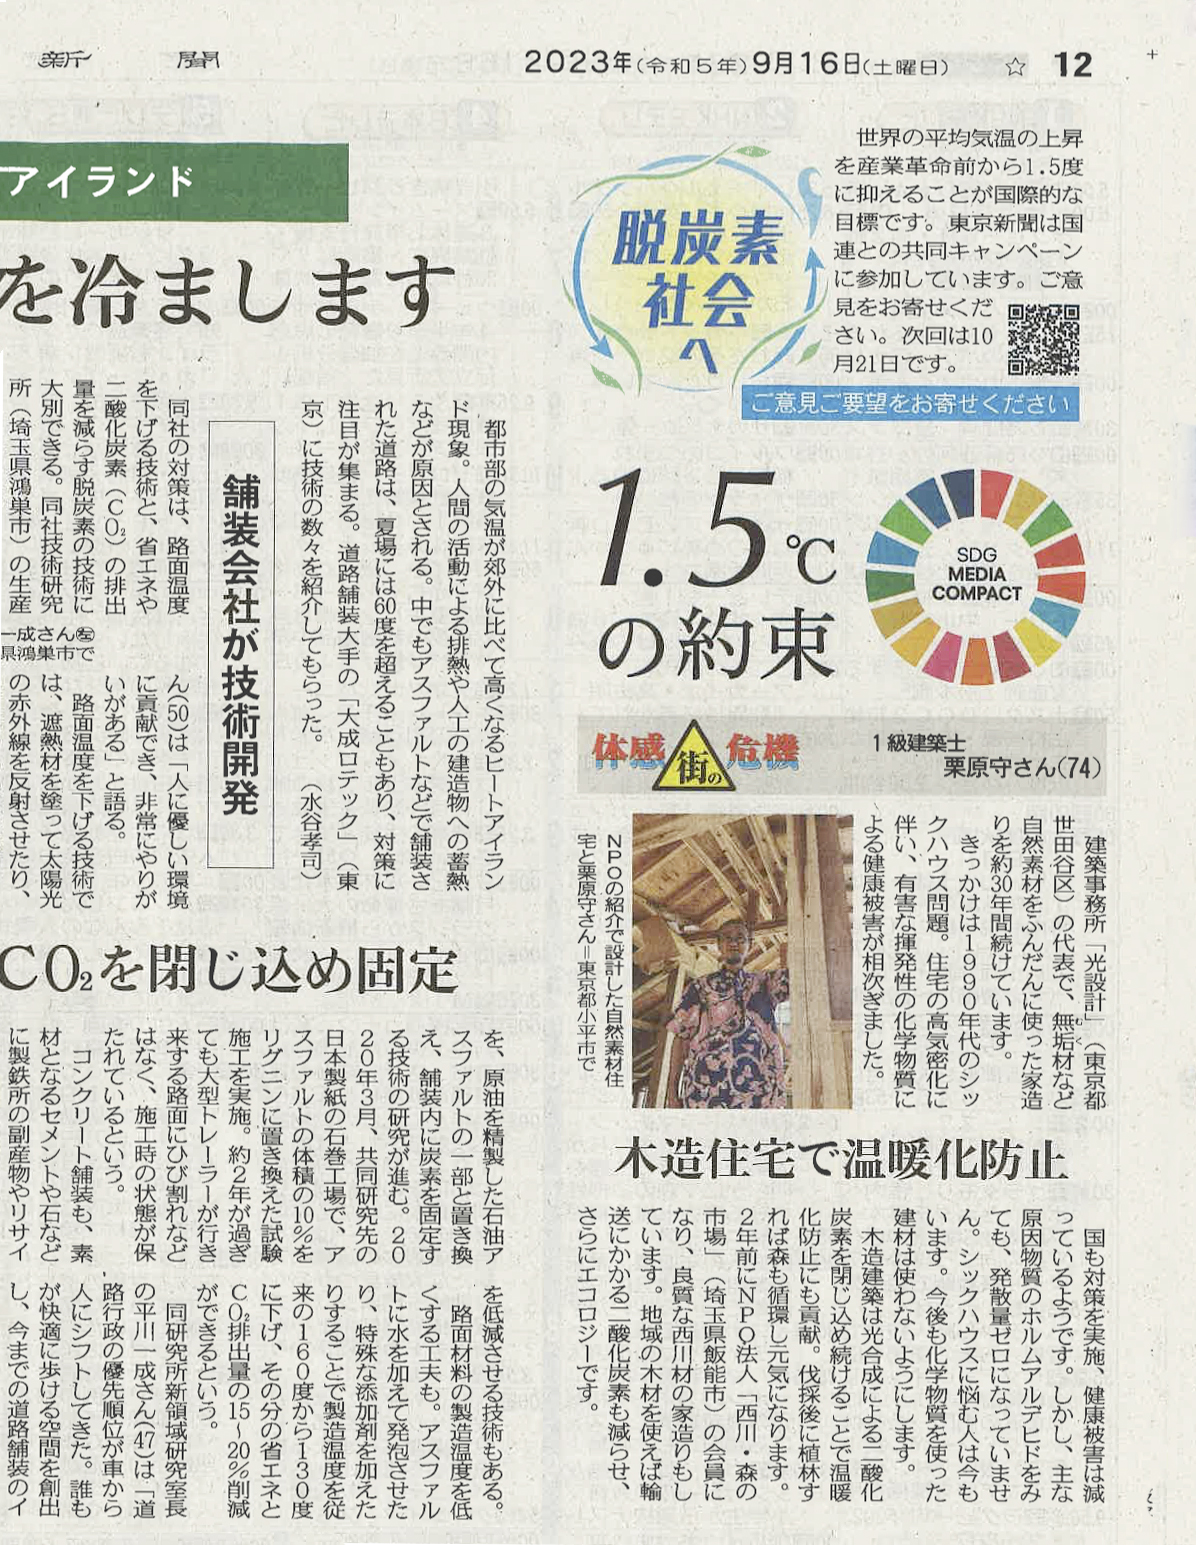 東京新聞「脱炭素社会へ」に掲載